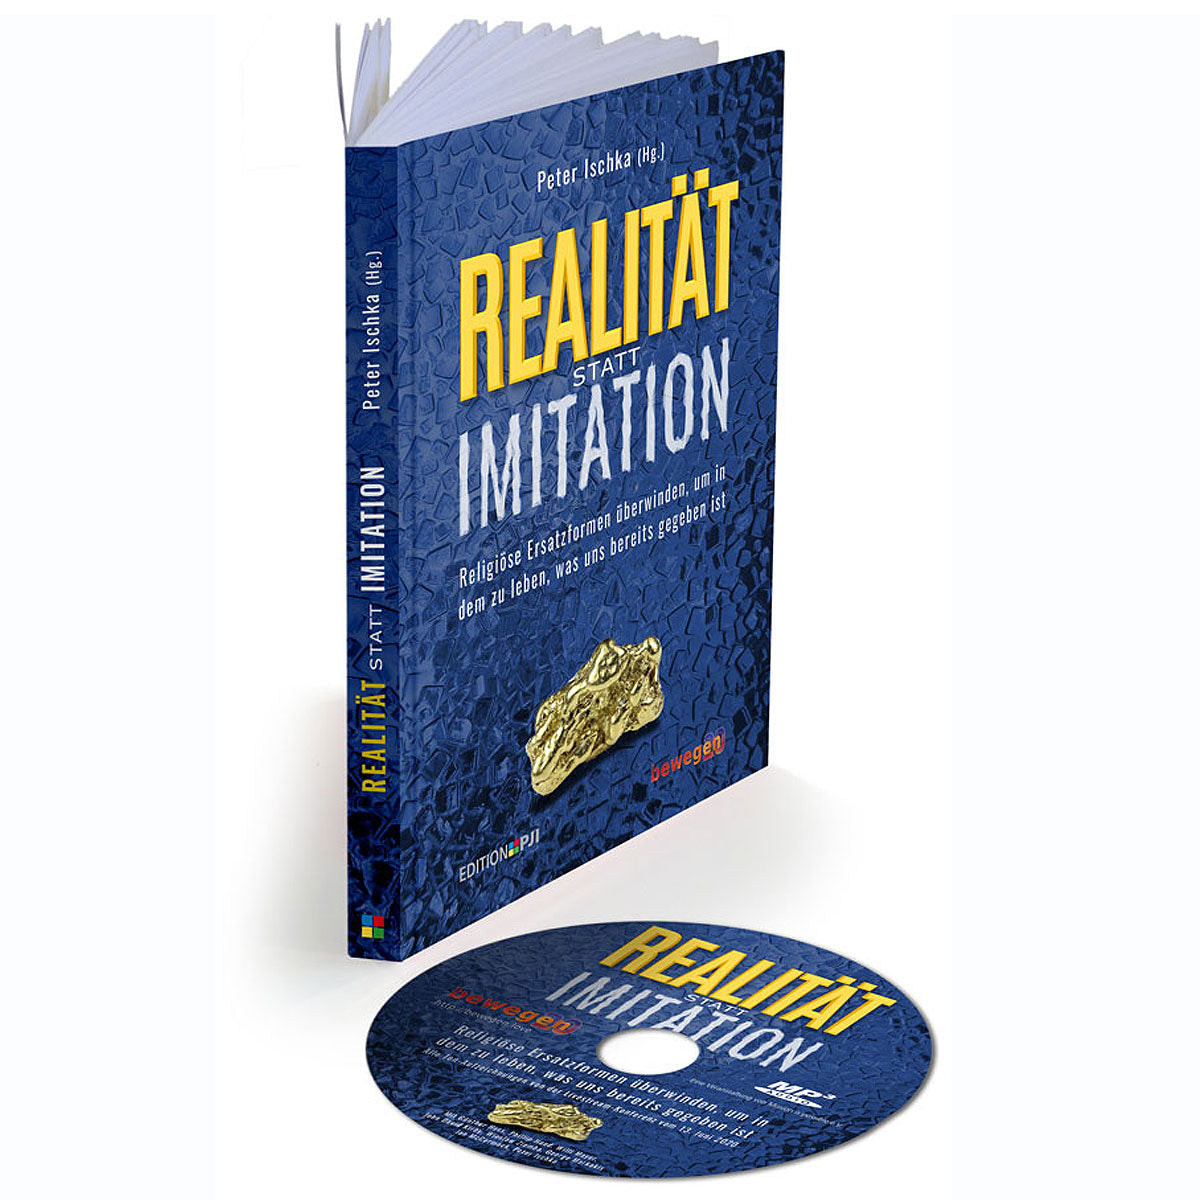 Realität statt Imitation - Religiöse Ersatzformen überwinden. um in dem zu leben. was uns bereits gegeben (inkl.MP3CD)